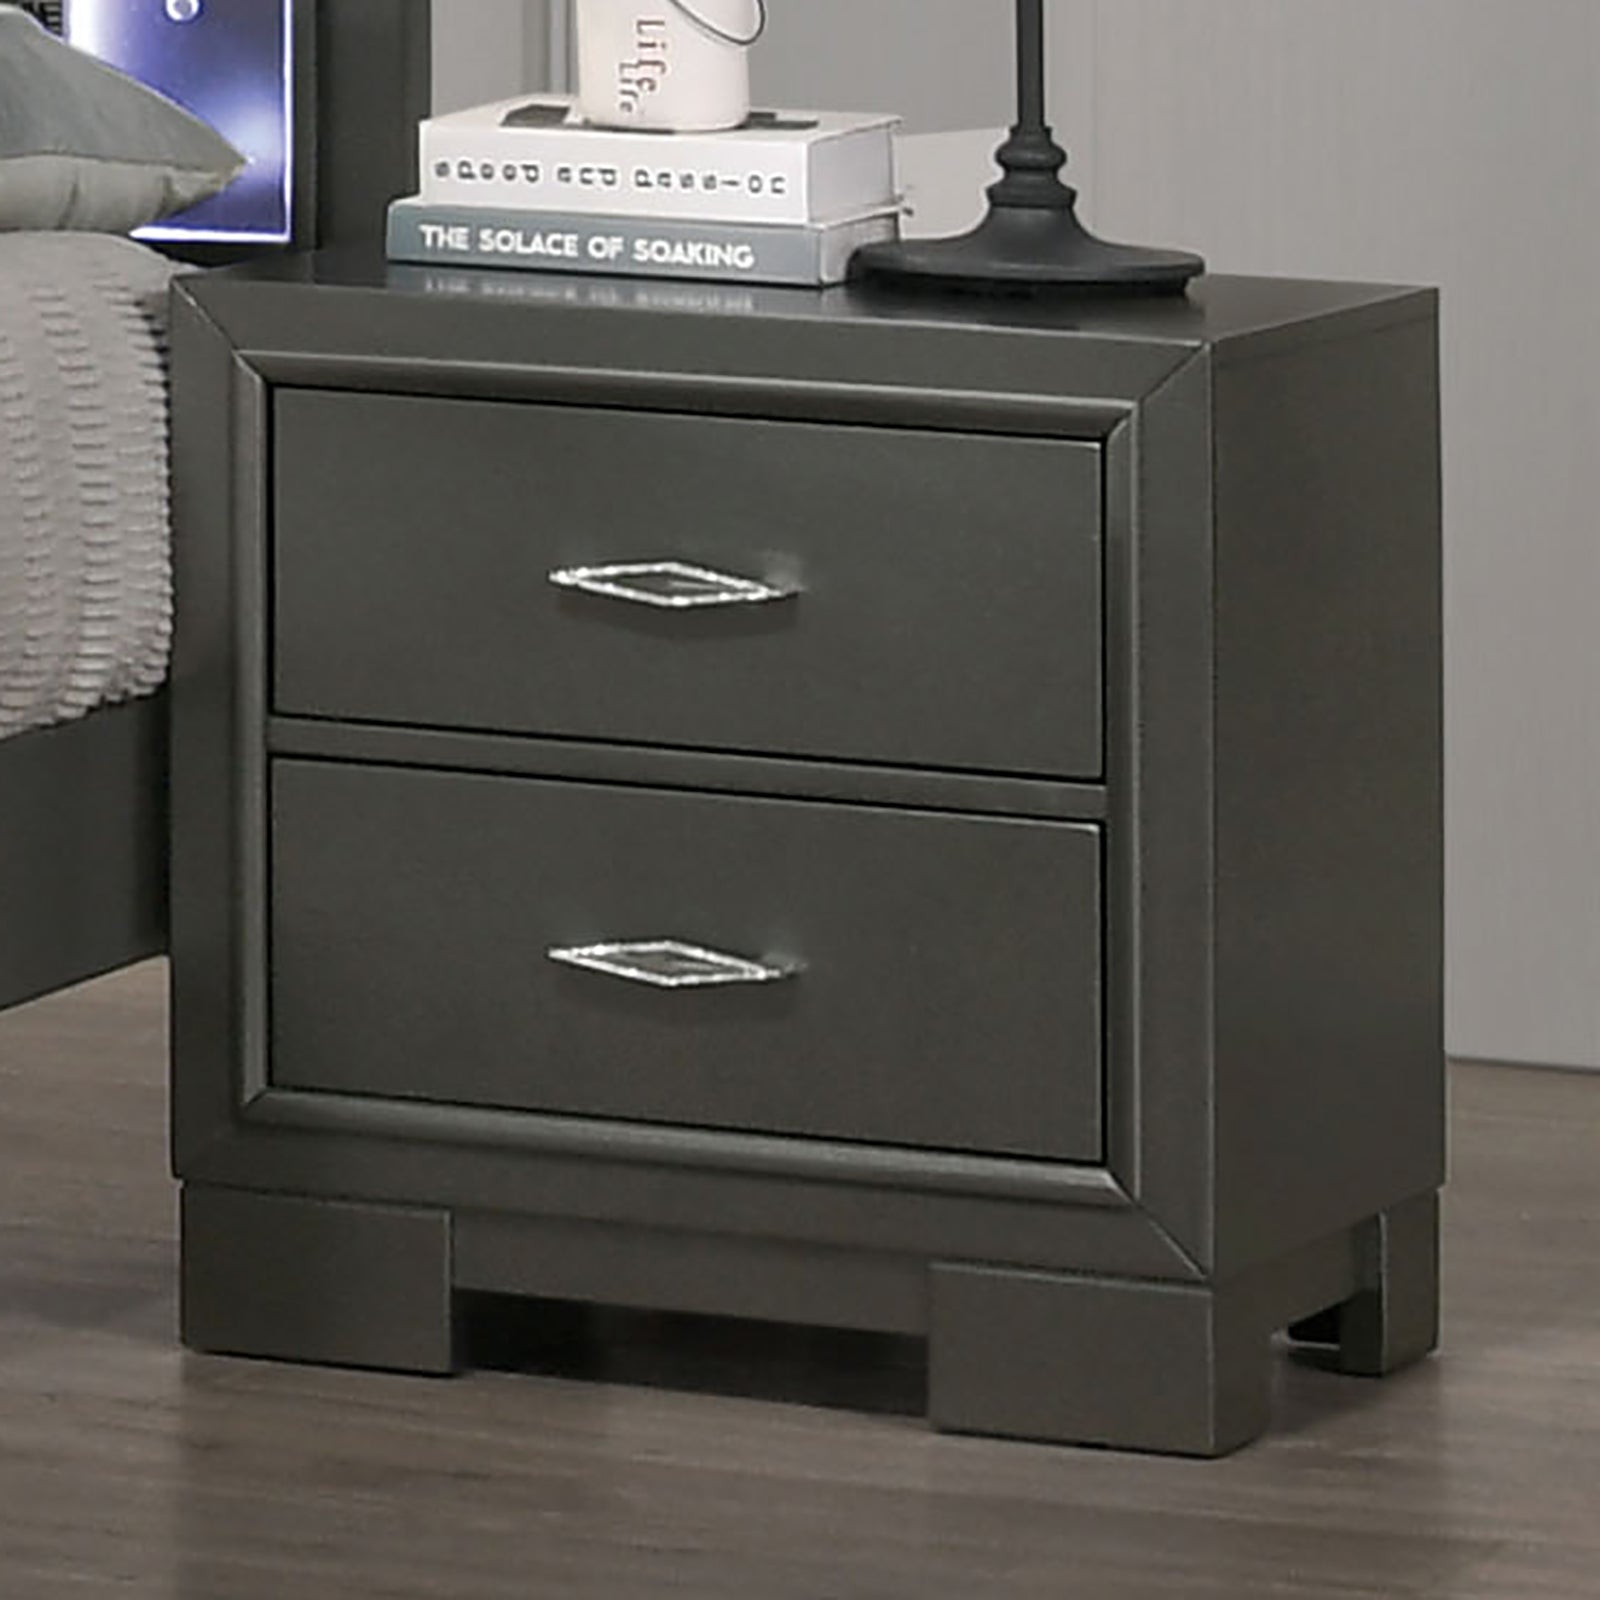 Metallic Gray Color Nightstand Bedroom 1pc Nightstand metallic grey-gray-2 drawers-bedroom-bedside